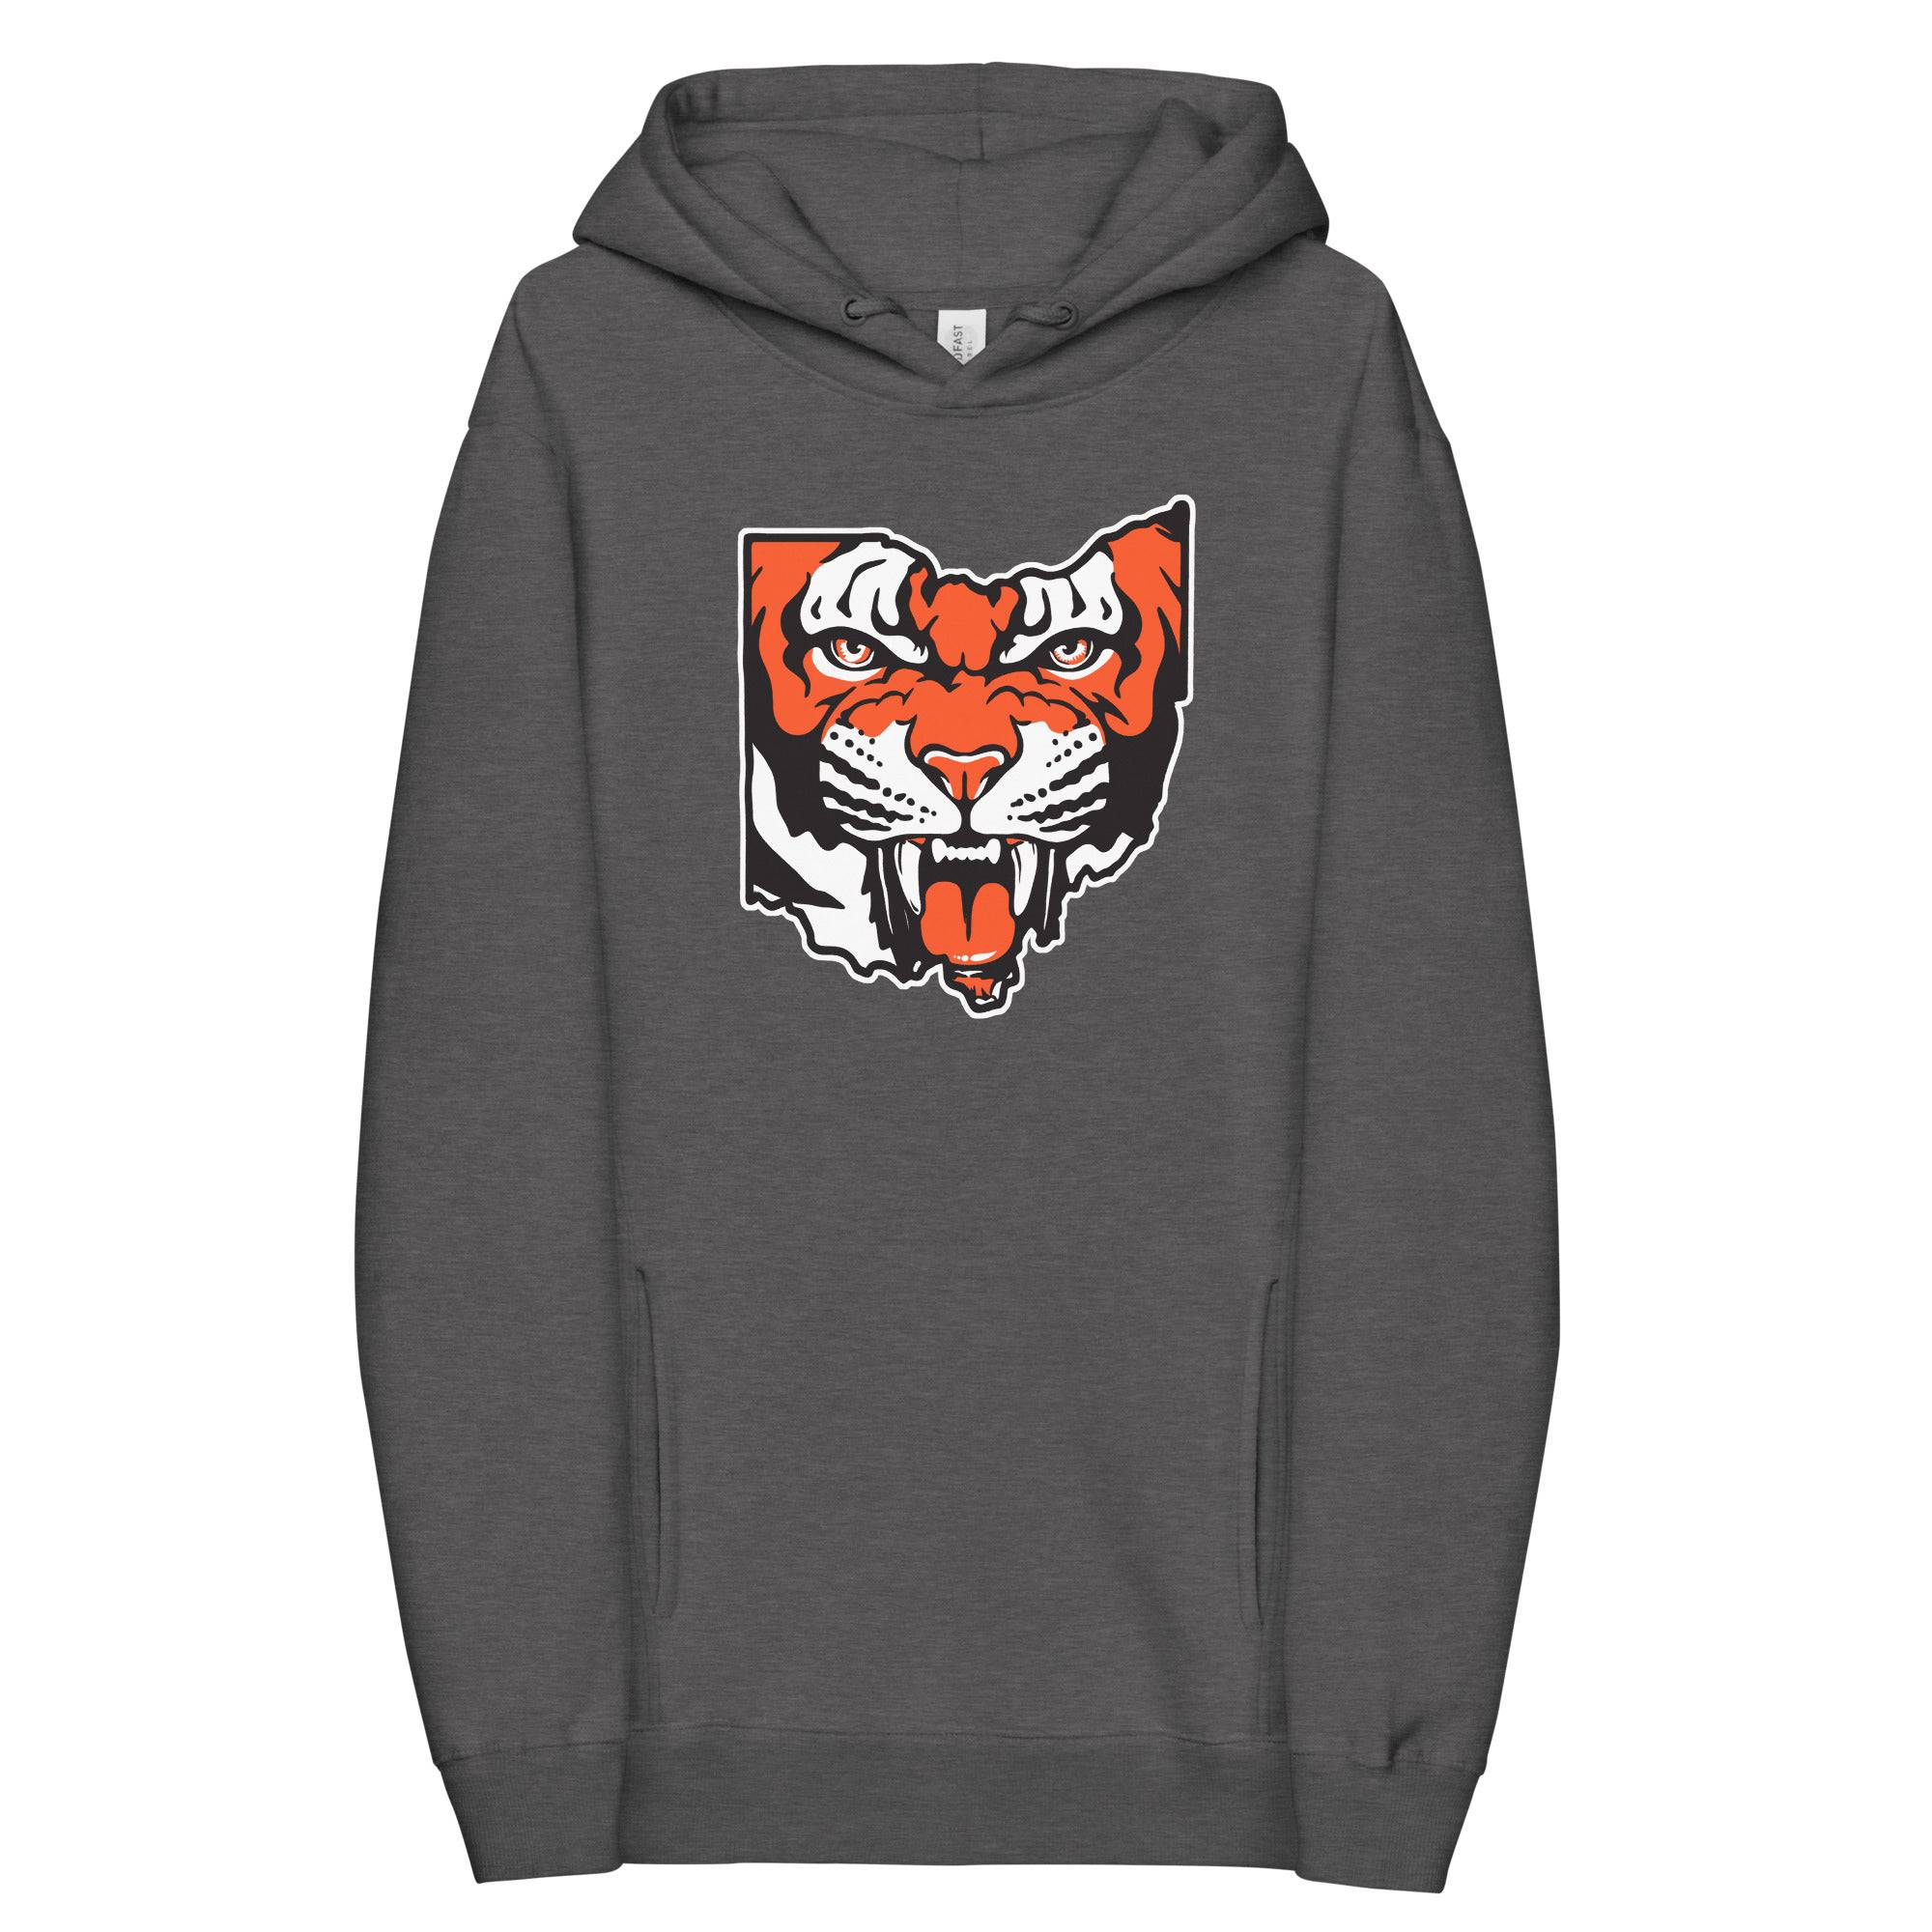 Ohio Bengal - Unisex fashion hoodie, Shirts & Tops, WeBleedOhio, WeBleedOhio